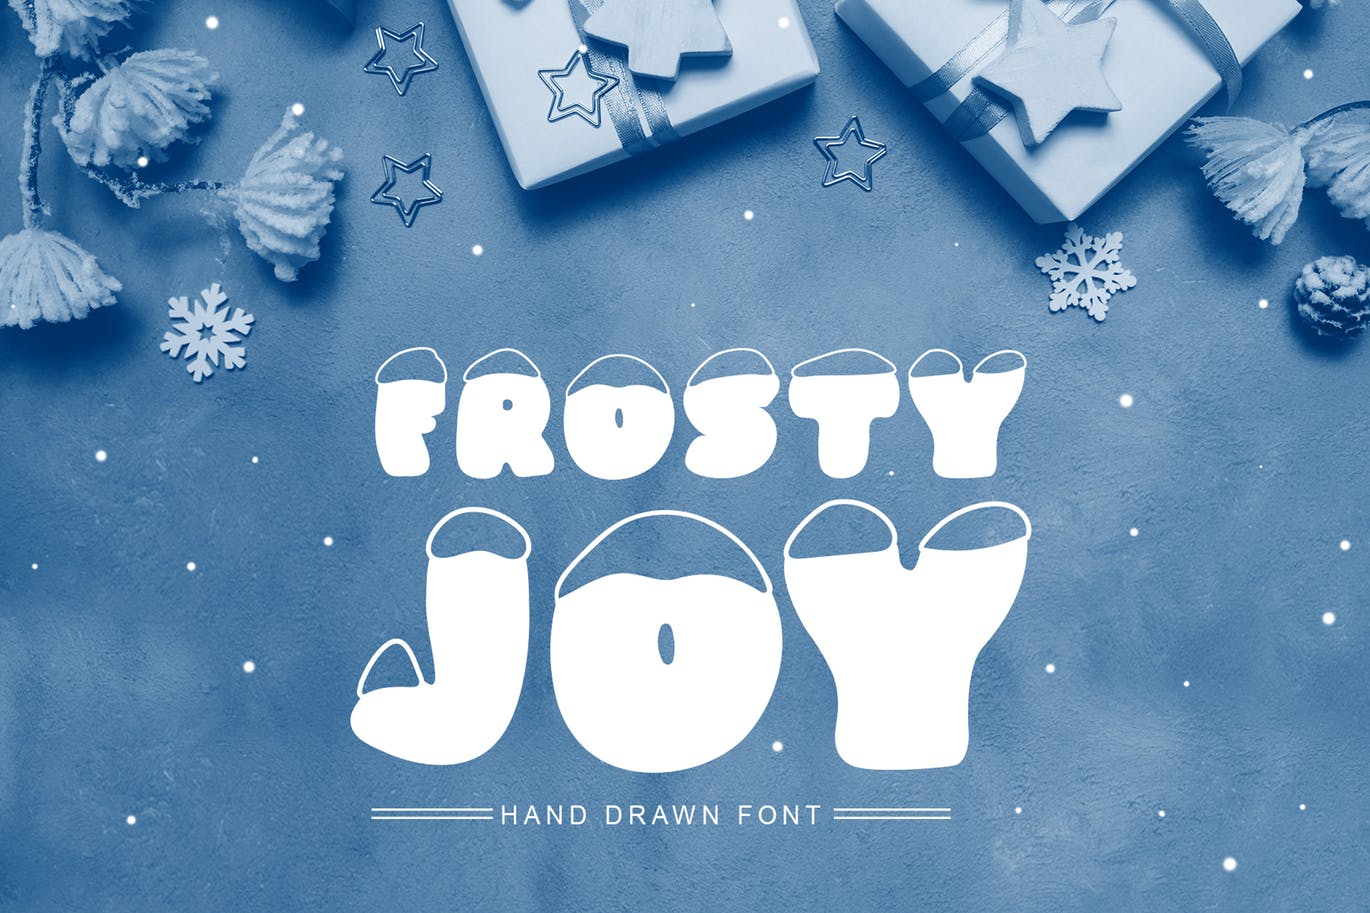 斯堪的纳维亚风格可爱积雪字体聚图网精选 Frosty Joy Hand Drawn Display Font插图